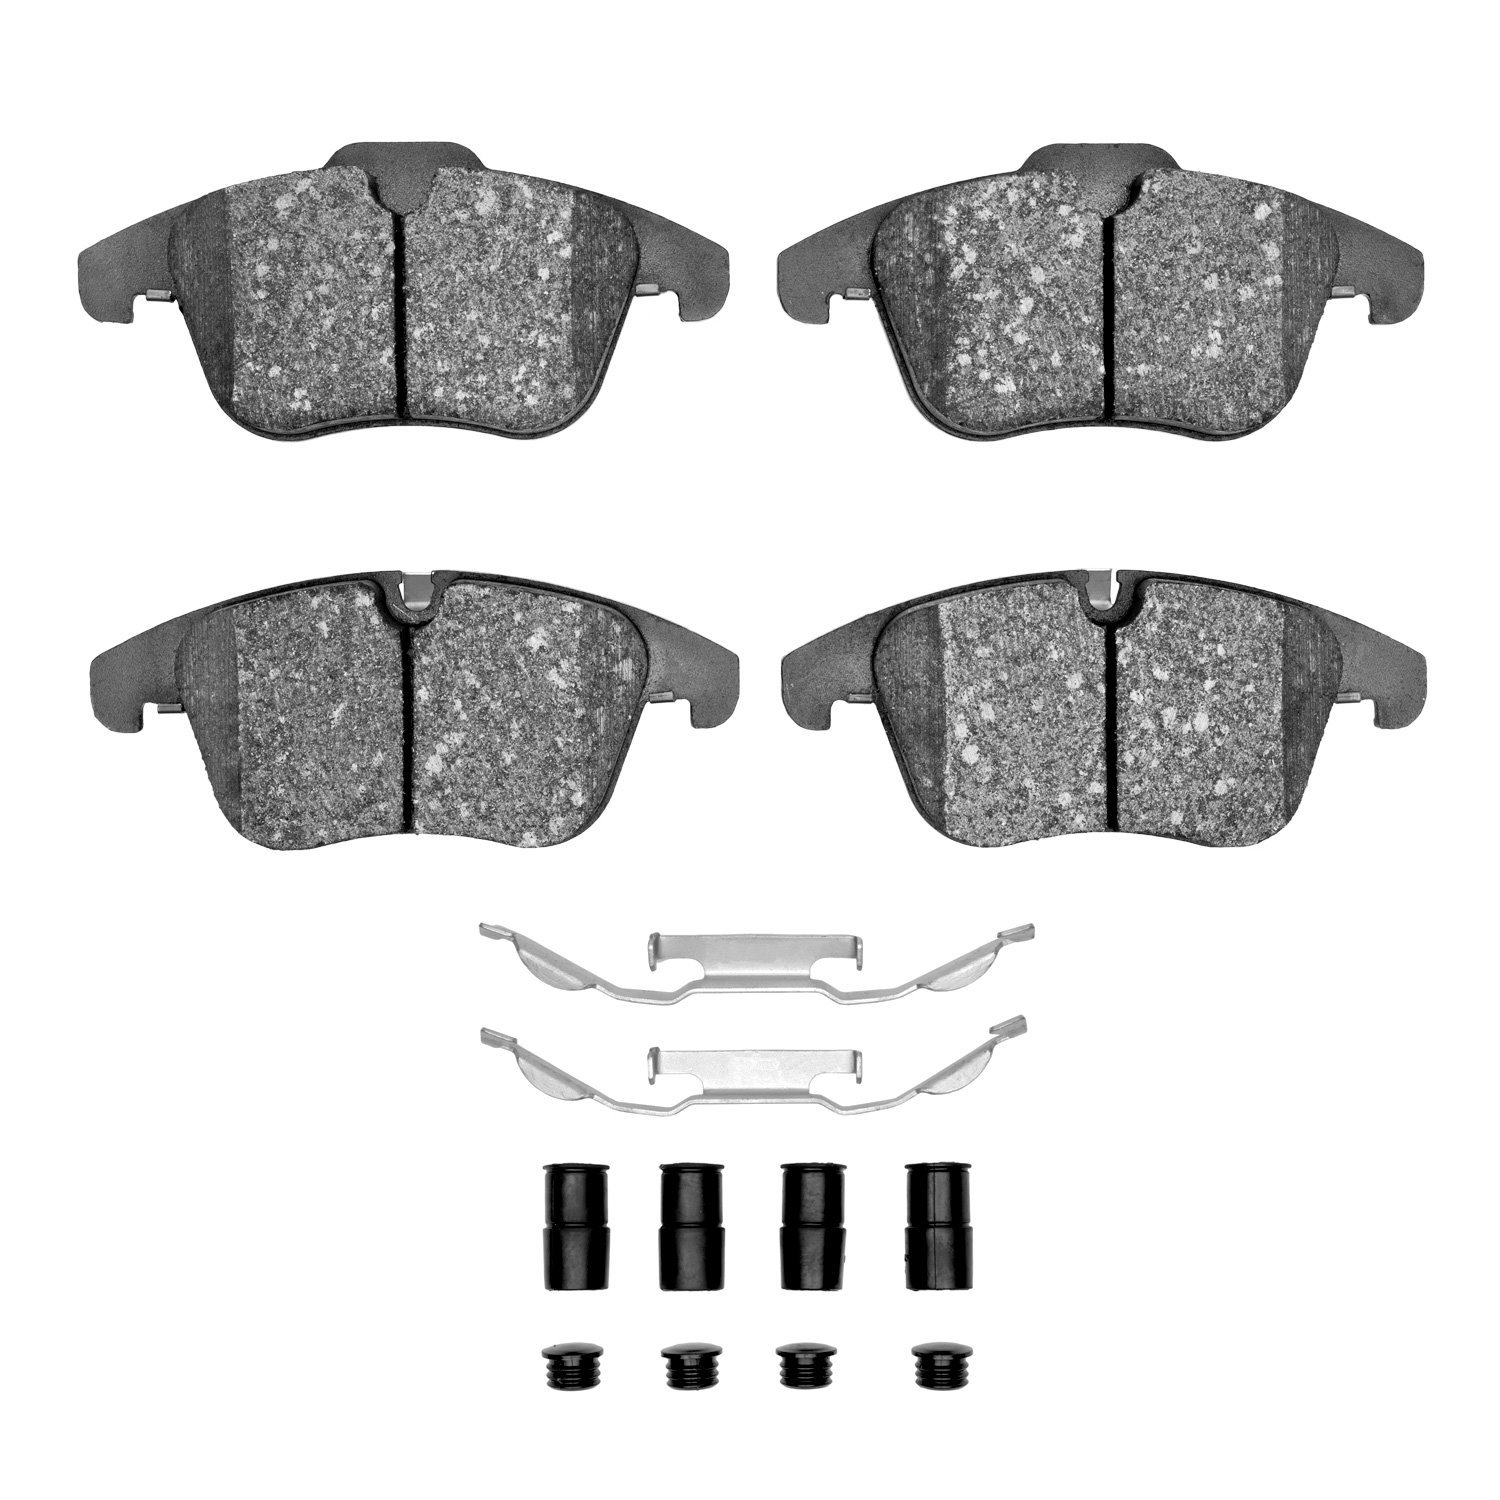 Ceramic Brake Pads & Hardware Kit, 2006-2018 Fits Multiple Makes/Models, Position: Front